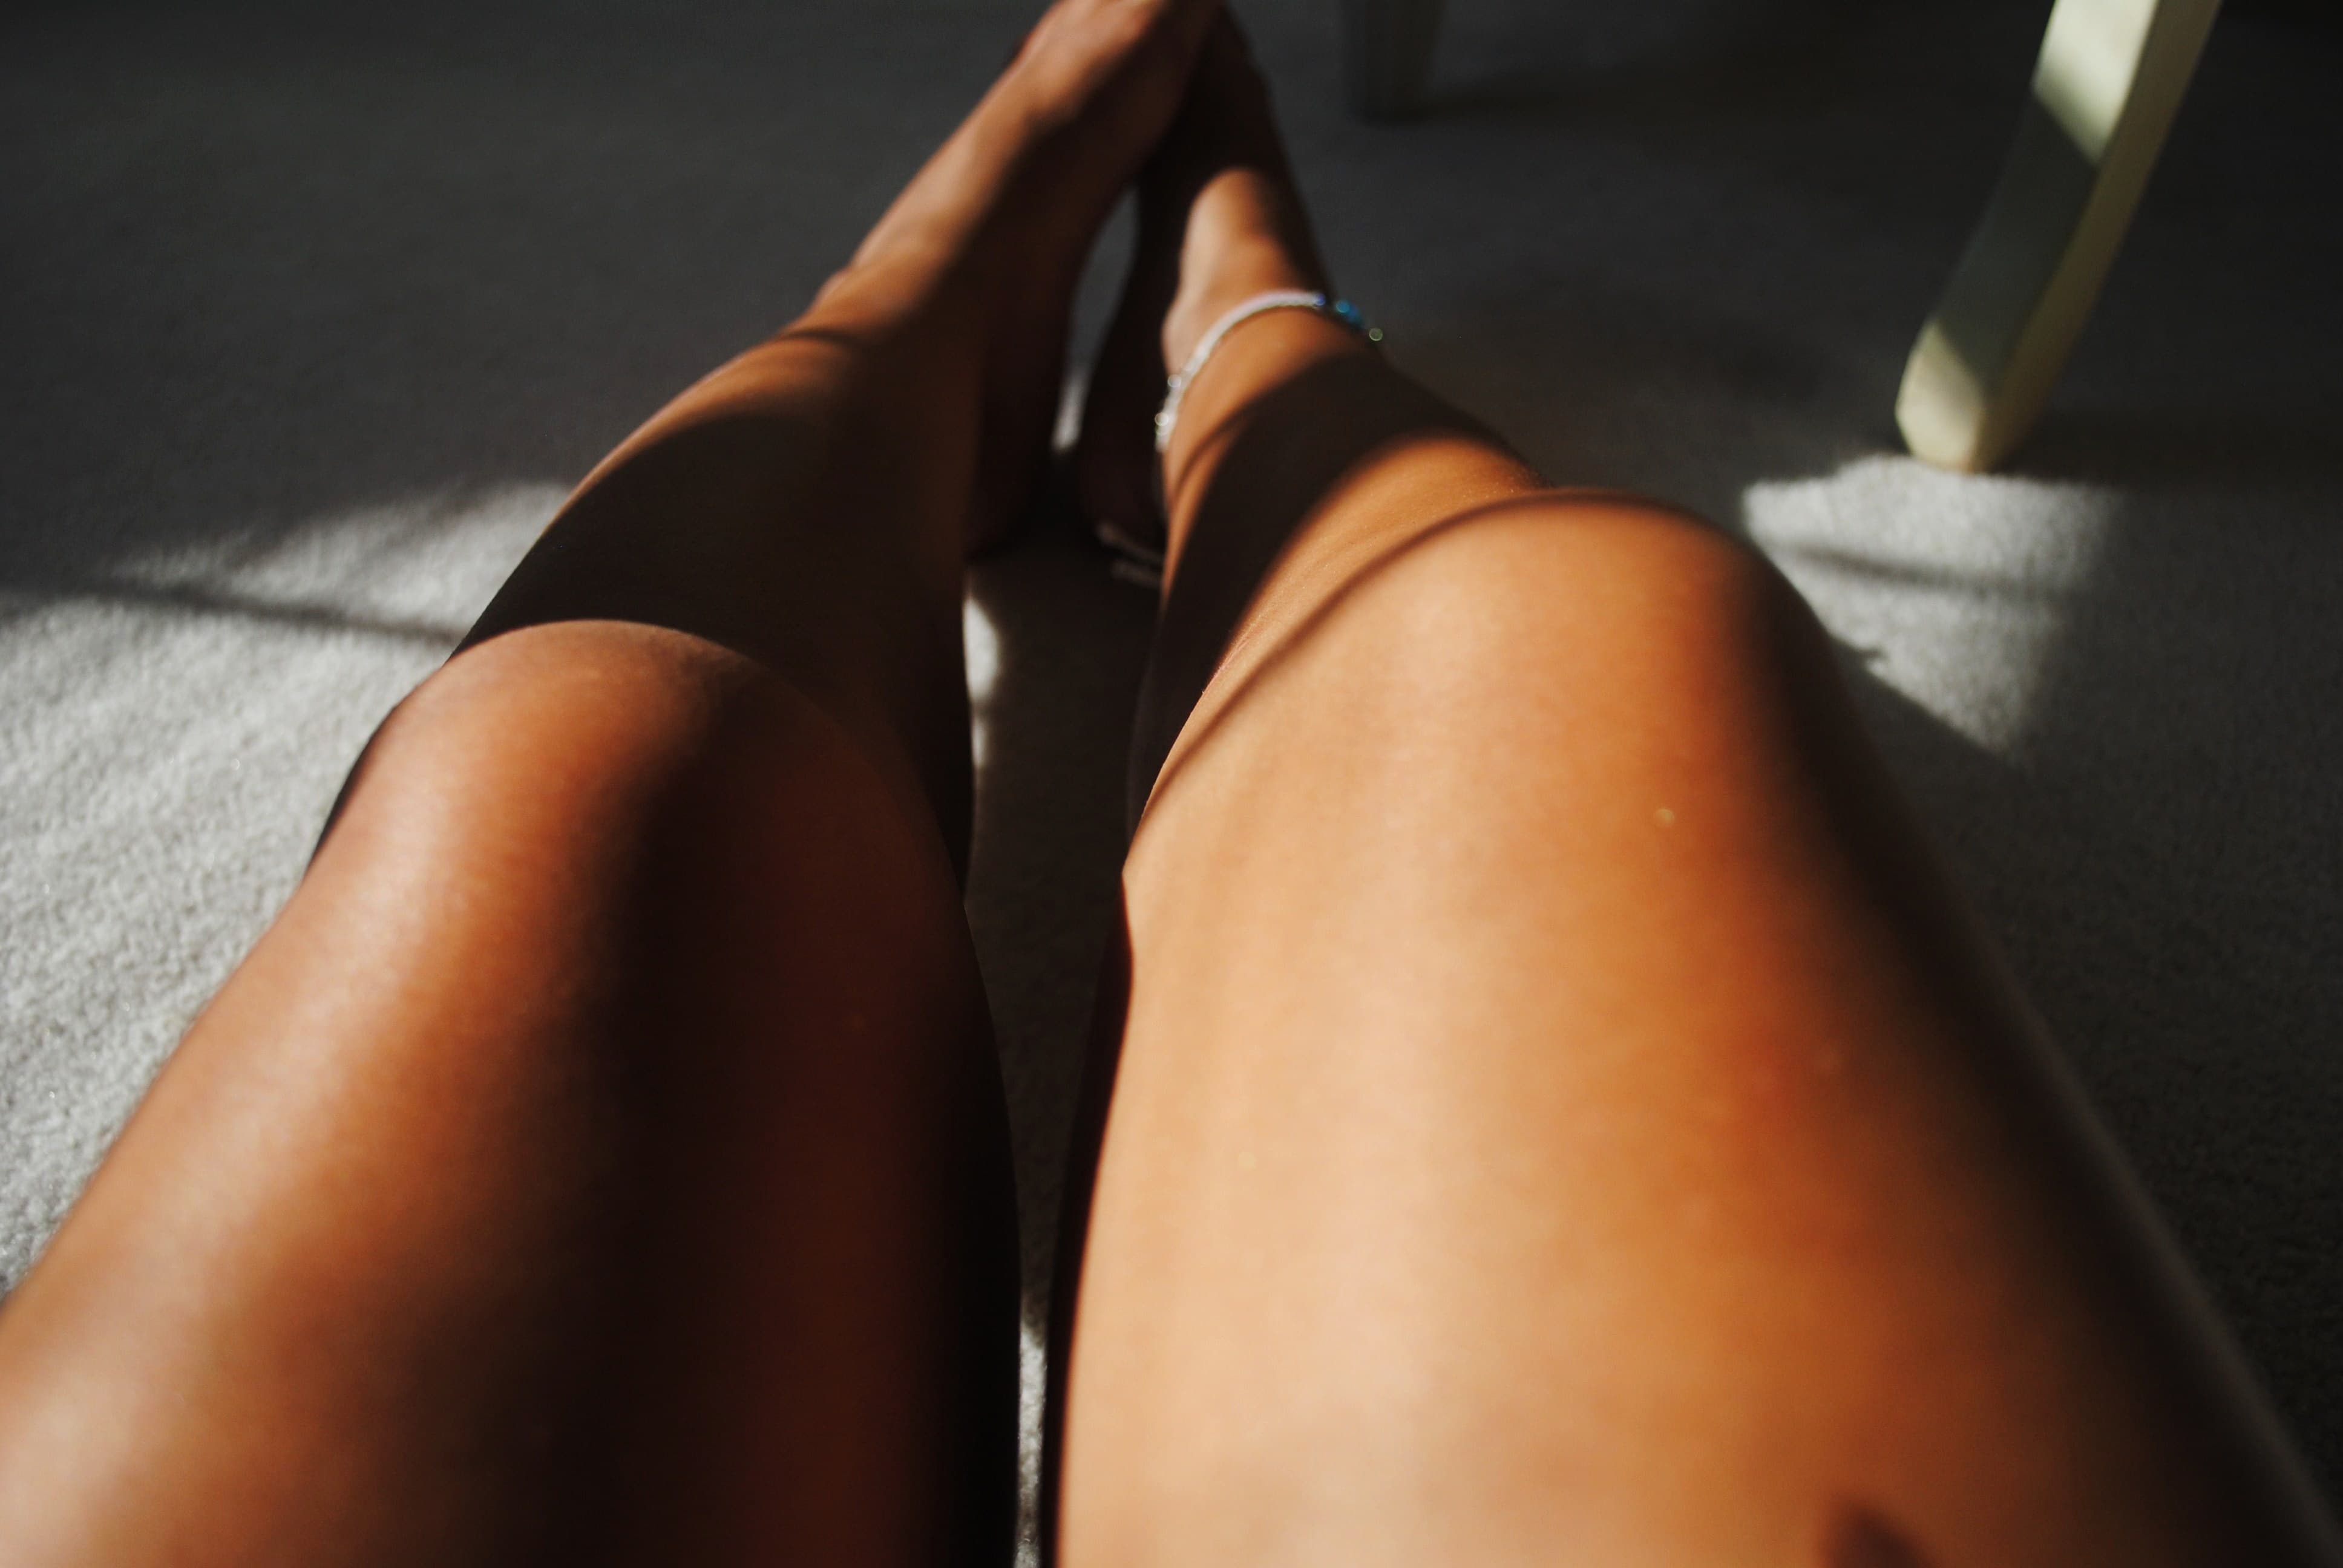 загорелые женские ноги